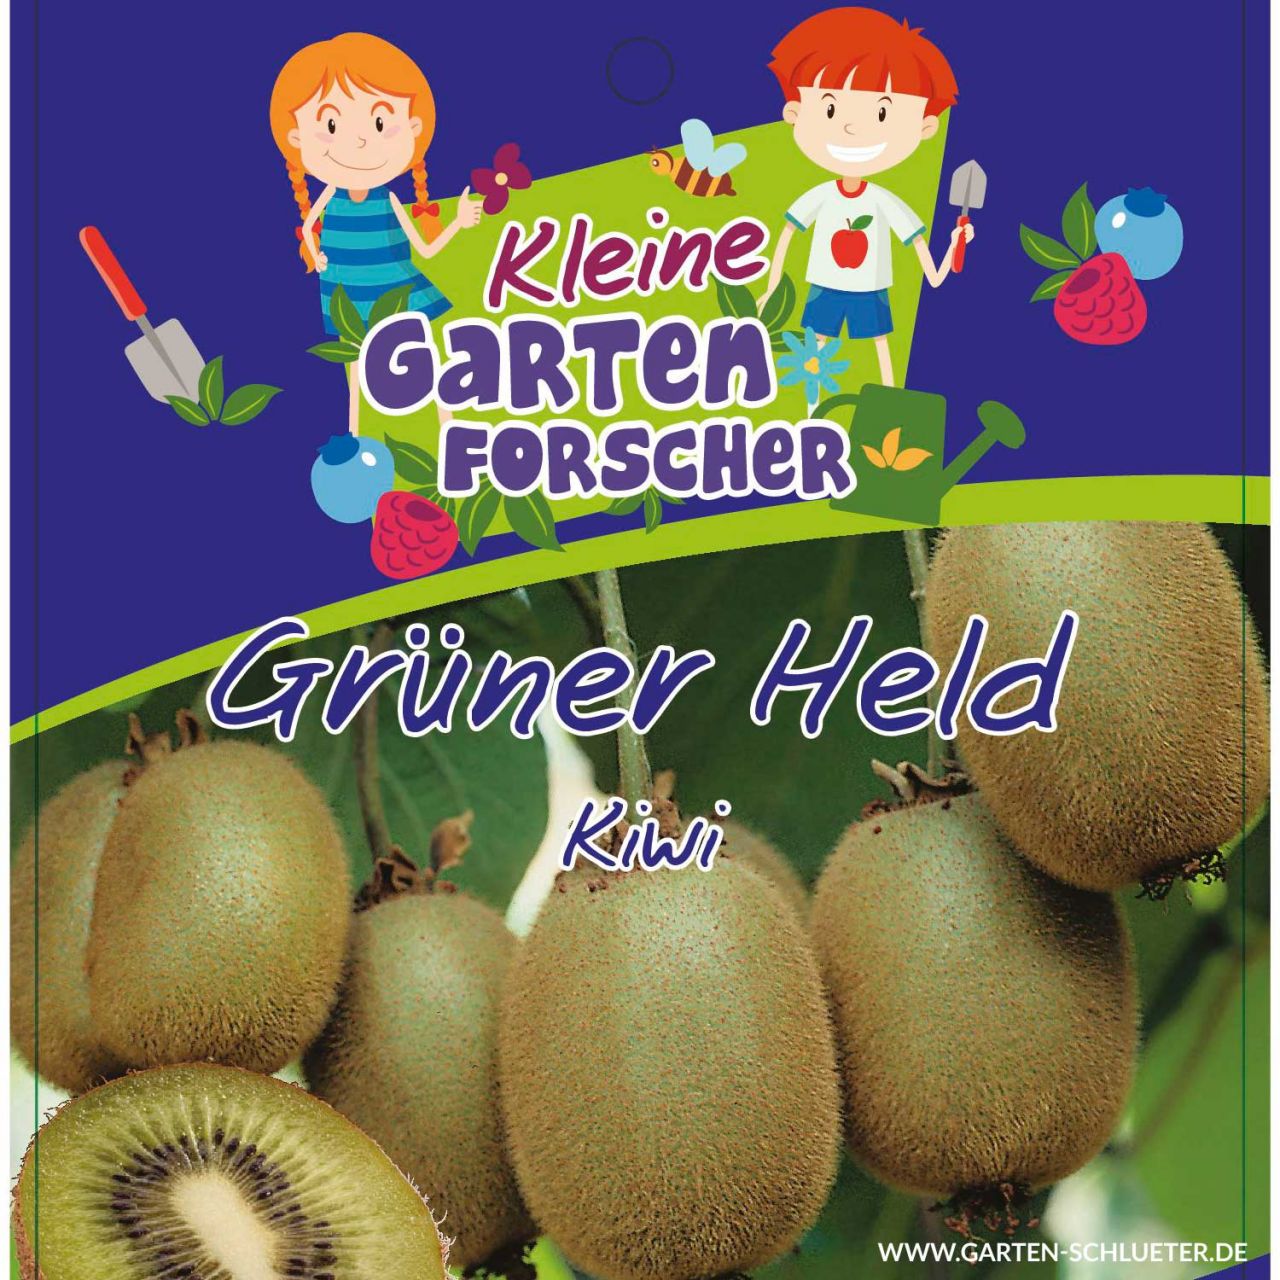 Kategorie <b>Obst </b> - Kiwi 'Grüner Held' Kleine Gartenforscher - Actinidia chinensis